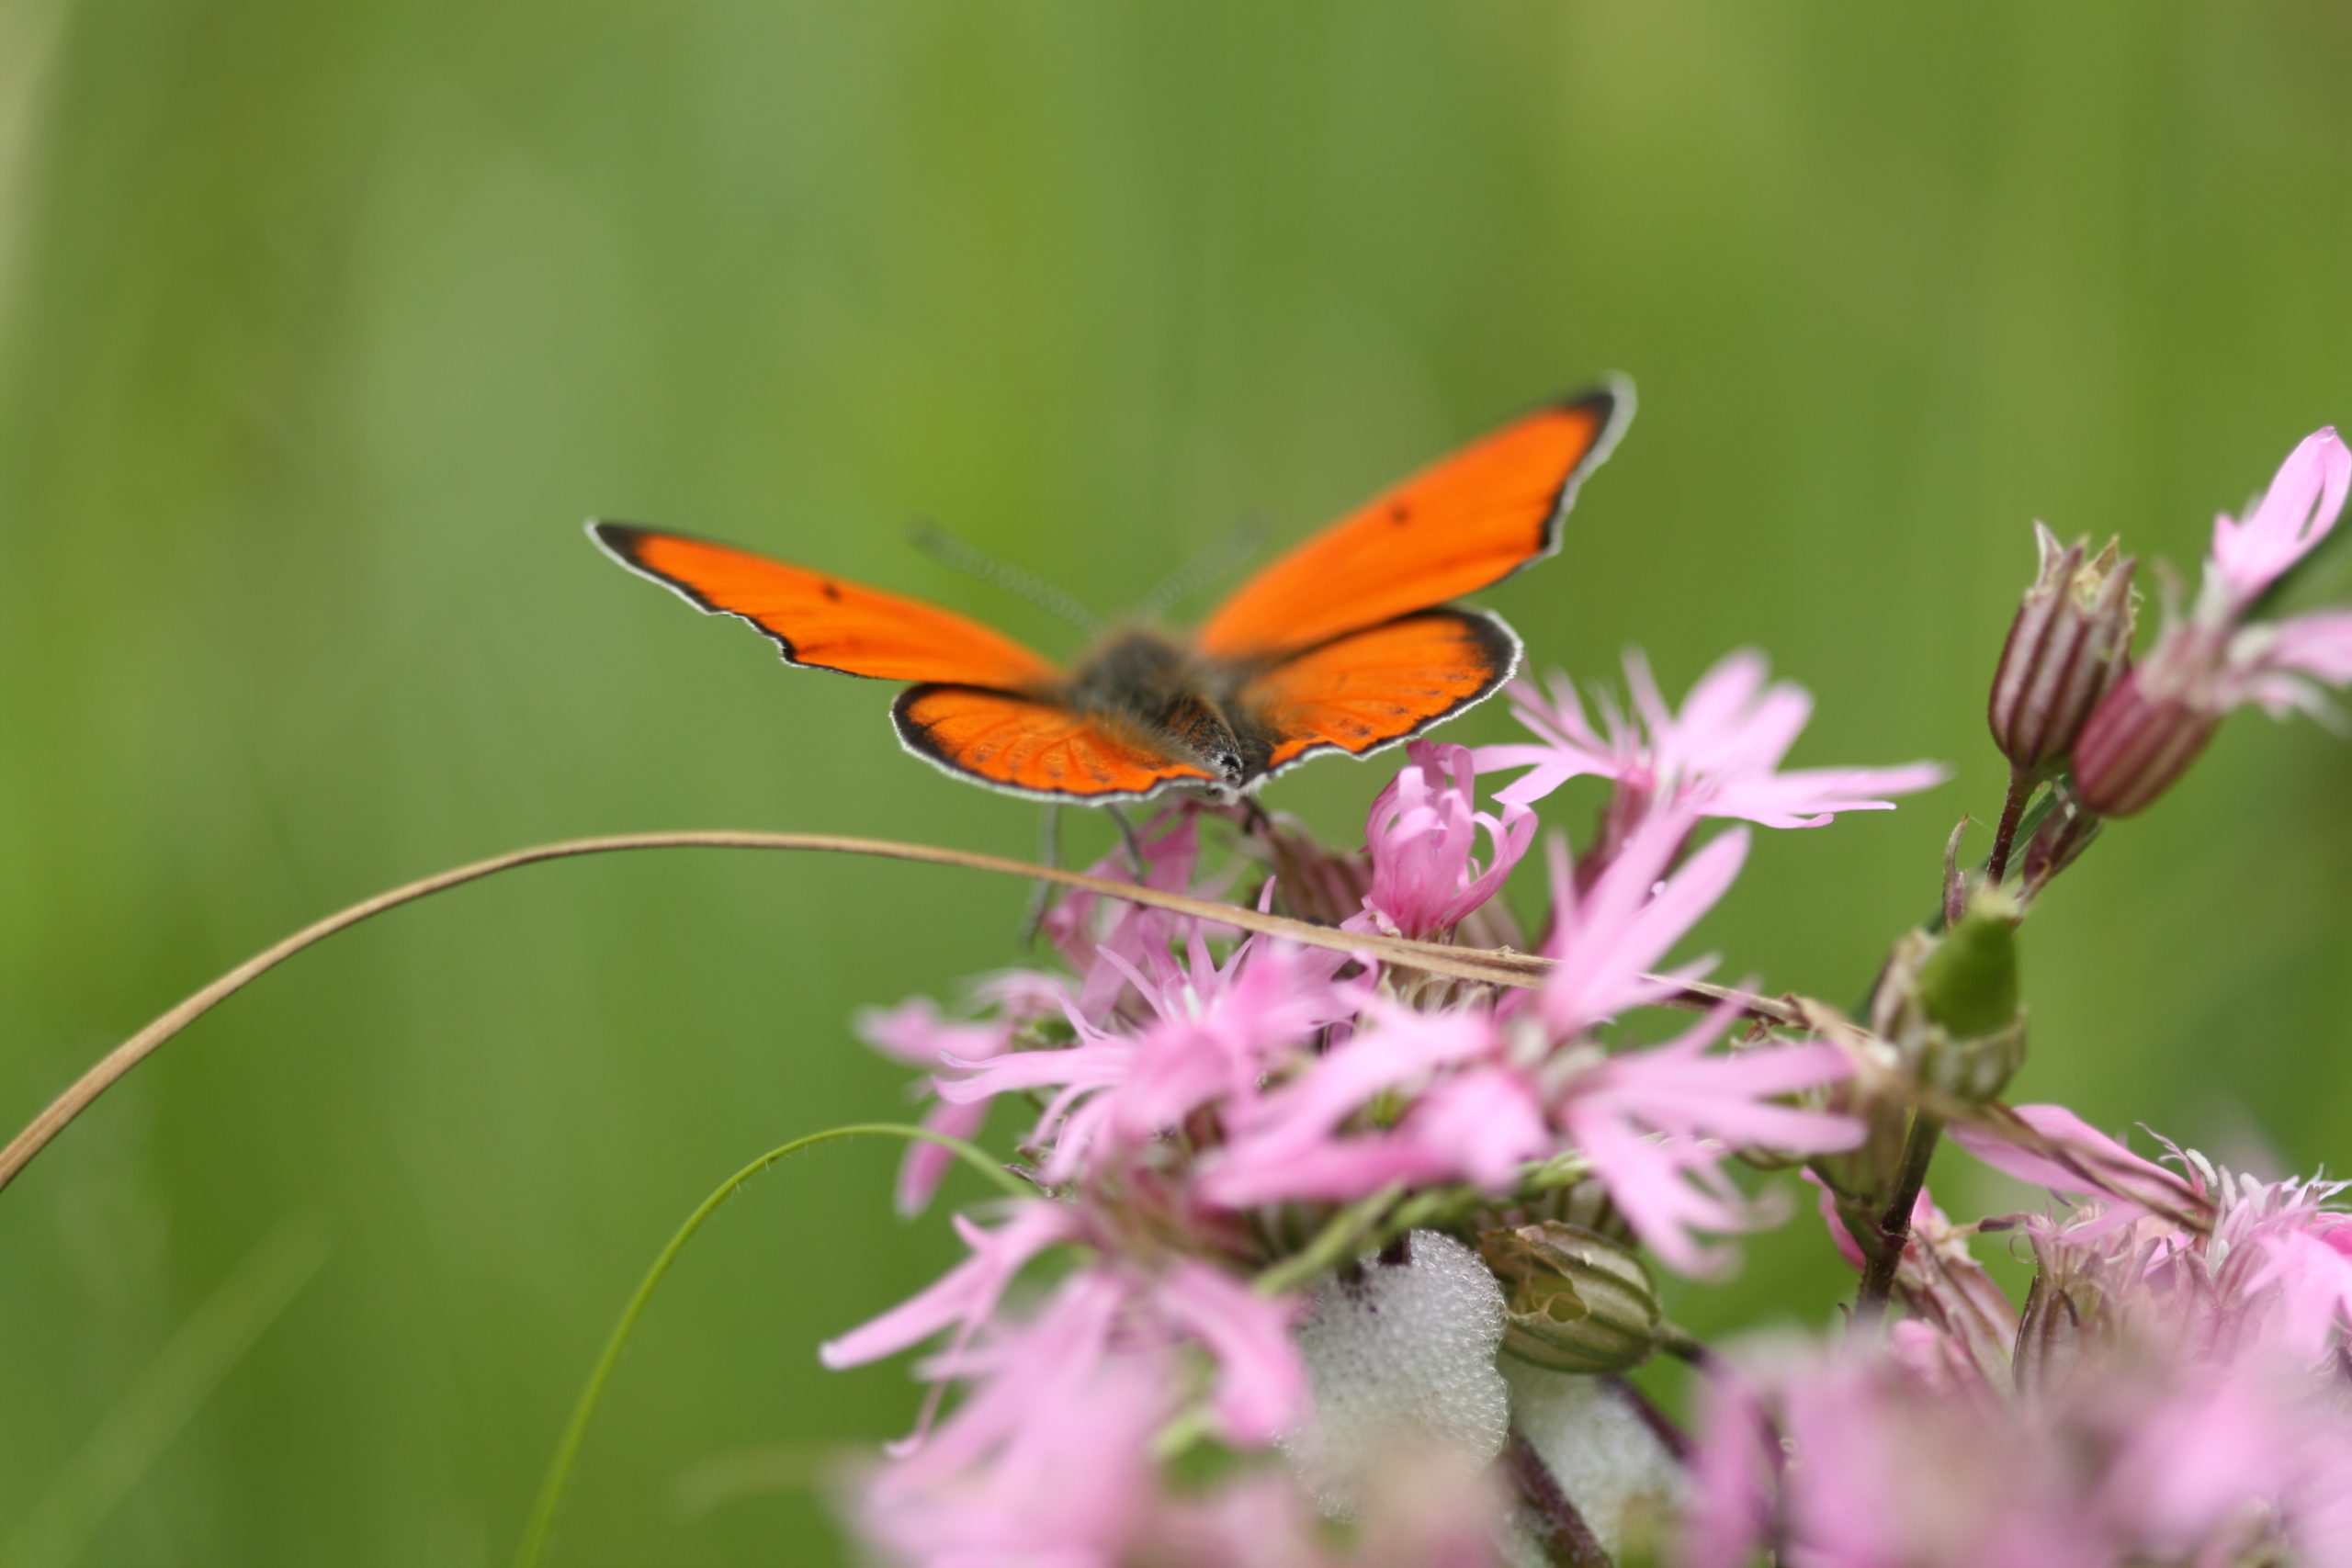 Le Cuivré des marais est un papillon présent dans les prairies naturelles du Marais poitevin. Il tient son nom au rouge doré de ses ailes bordées de noir